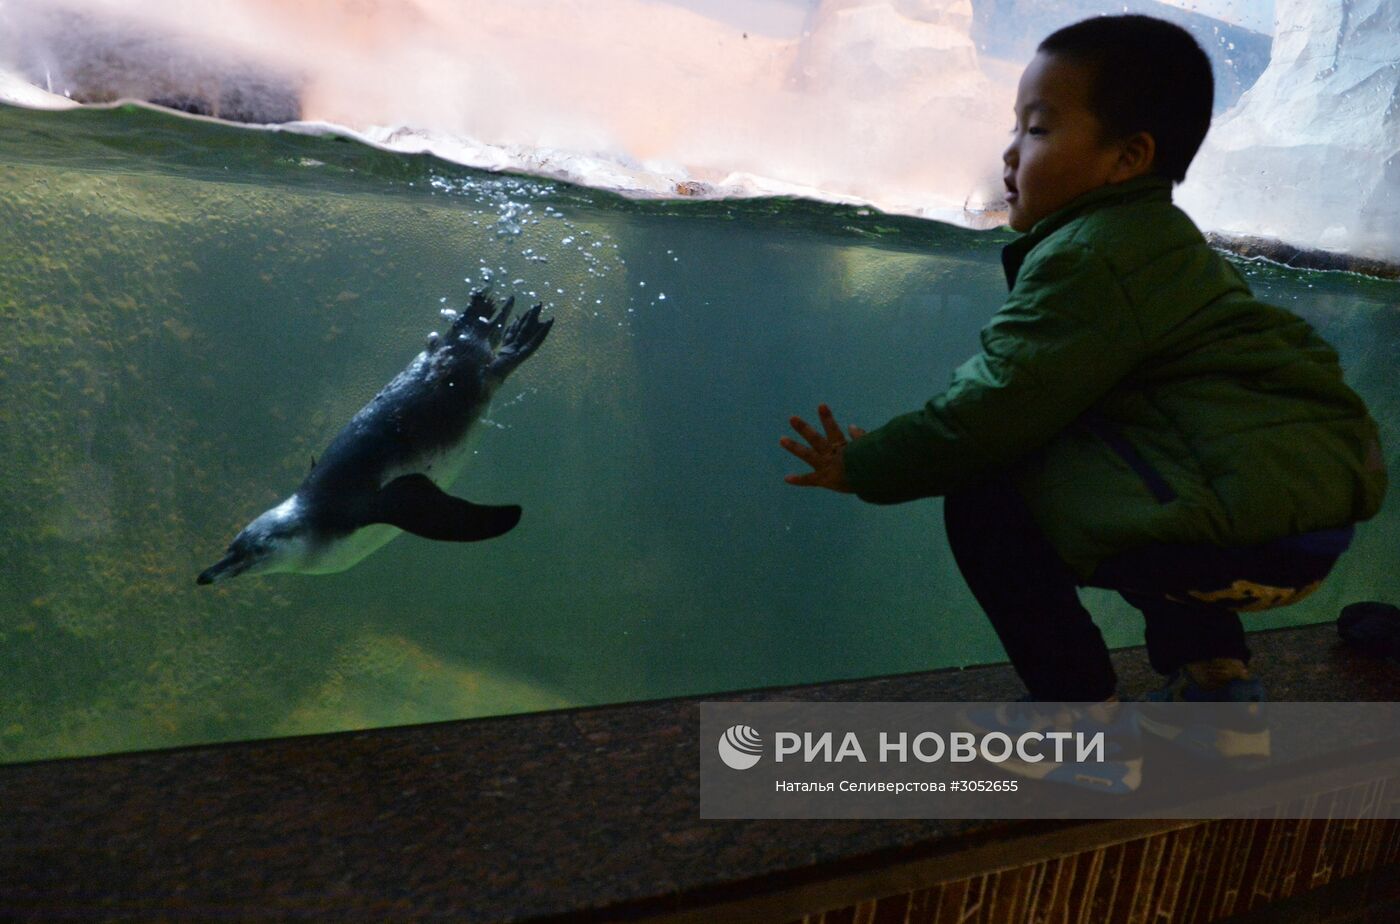 В Московском зоопарке появились птенцы пингвинов Гумбольдта